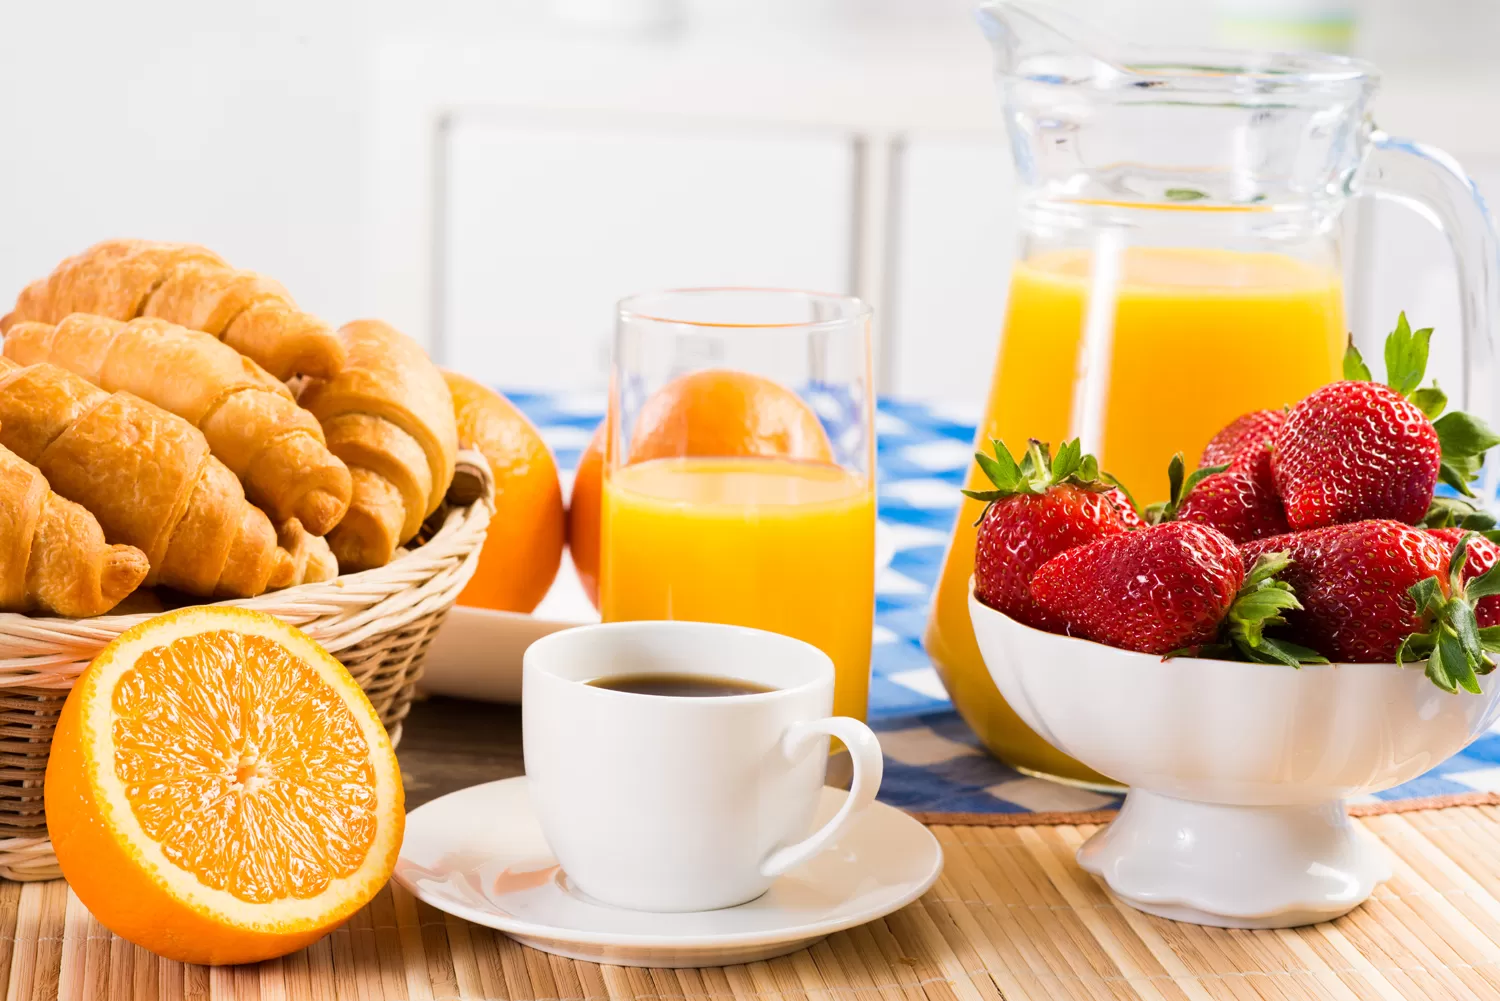 Cómo elegir el desayuno ideal según tu estilo de vida